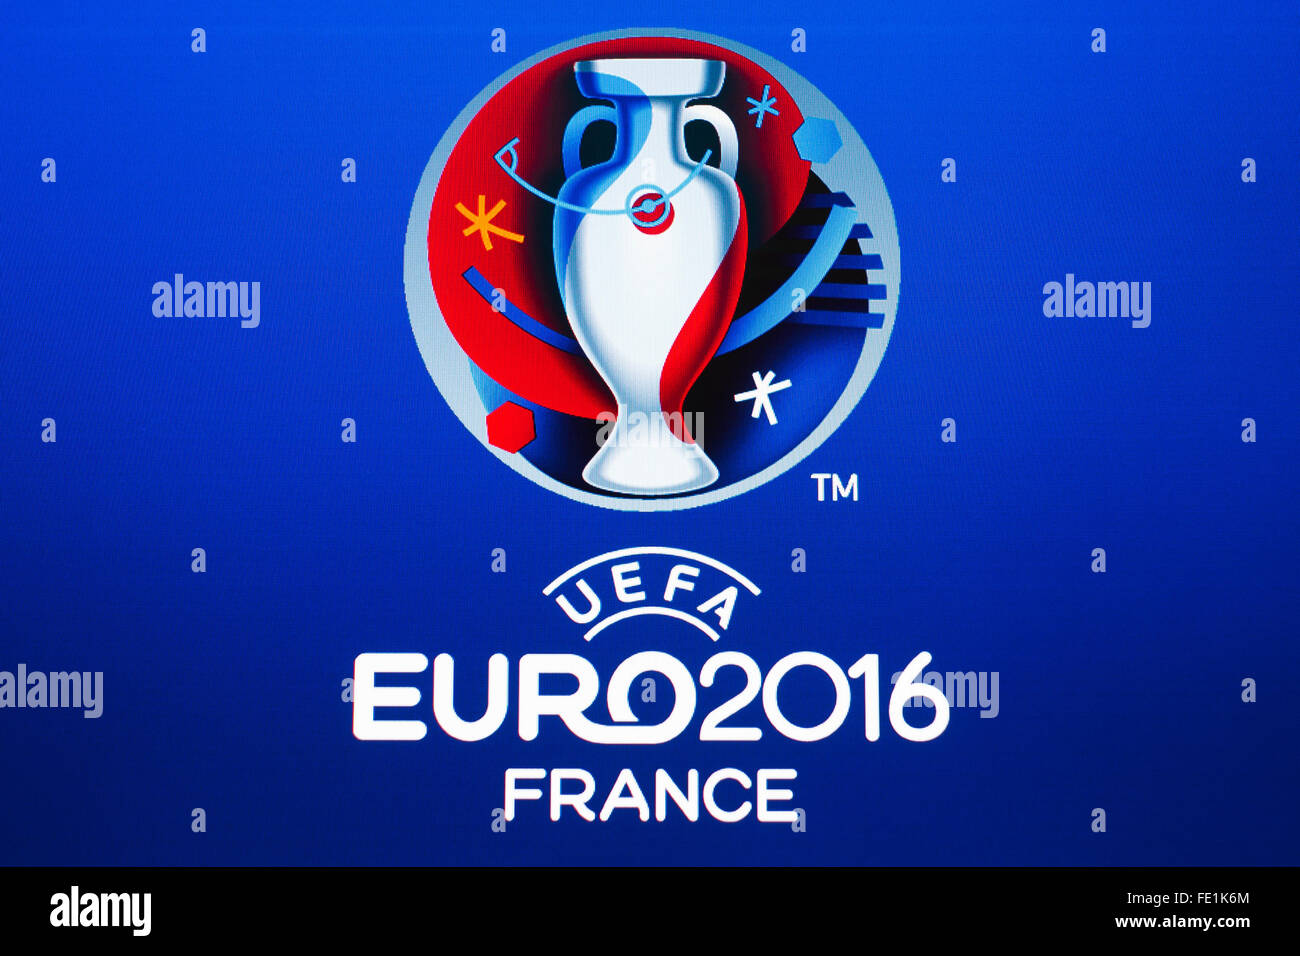 GDANSK, Polonia - 20 de noviembre de 2015. Logotipo del Campeonato Europeo de la UEFA de 2016 en Francia, en la pantalla de ordenador Foto de stock